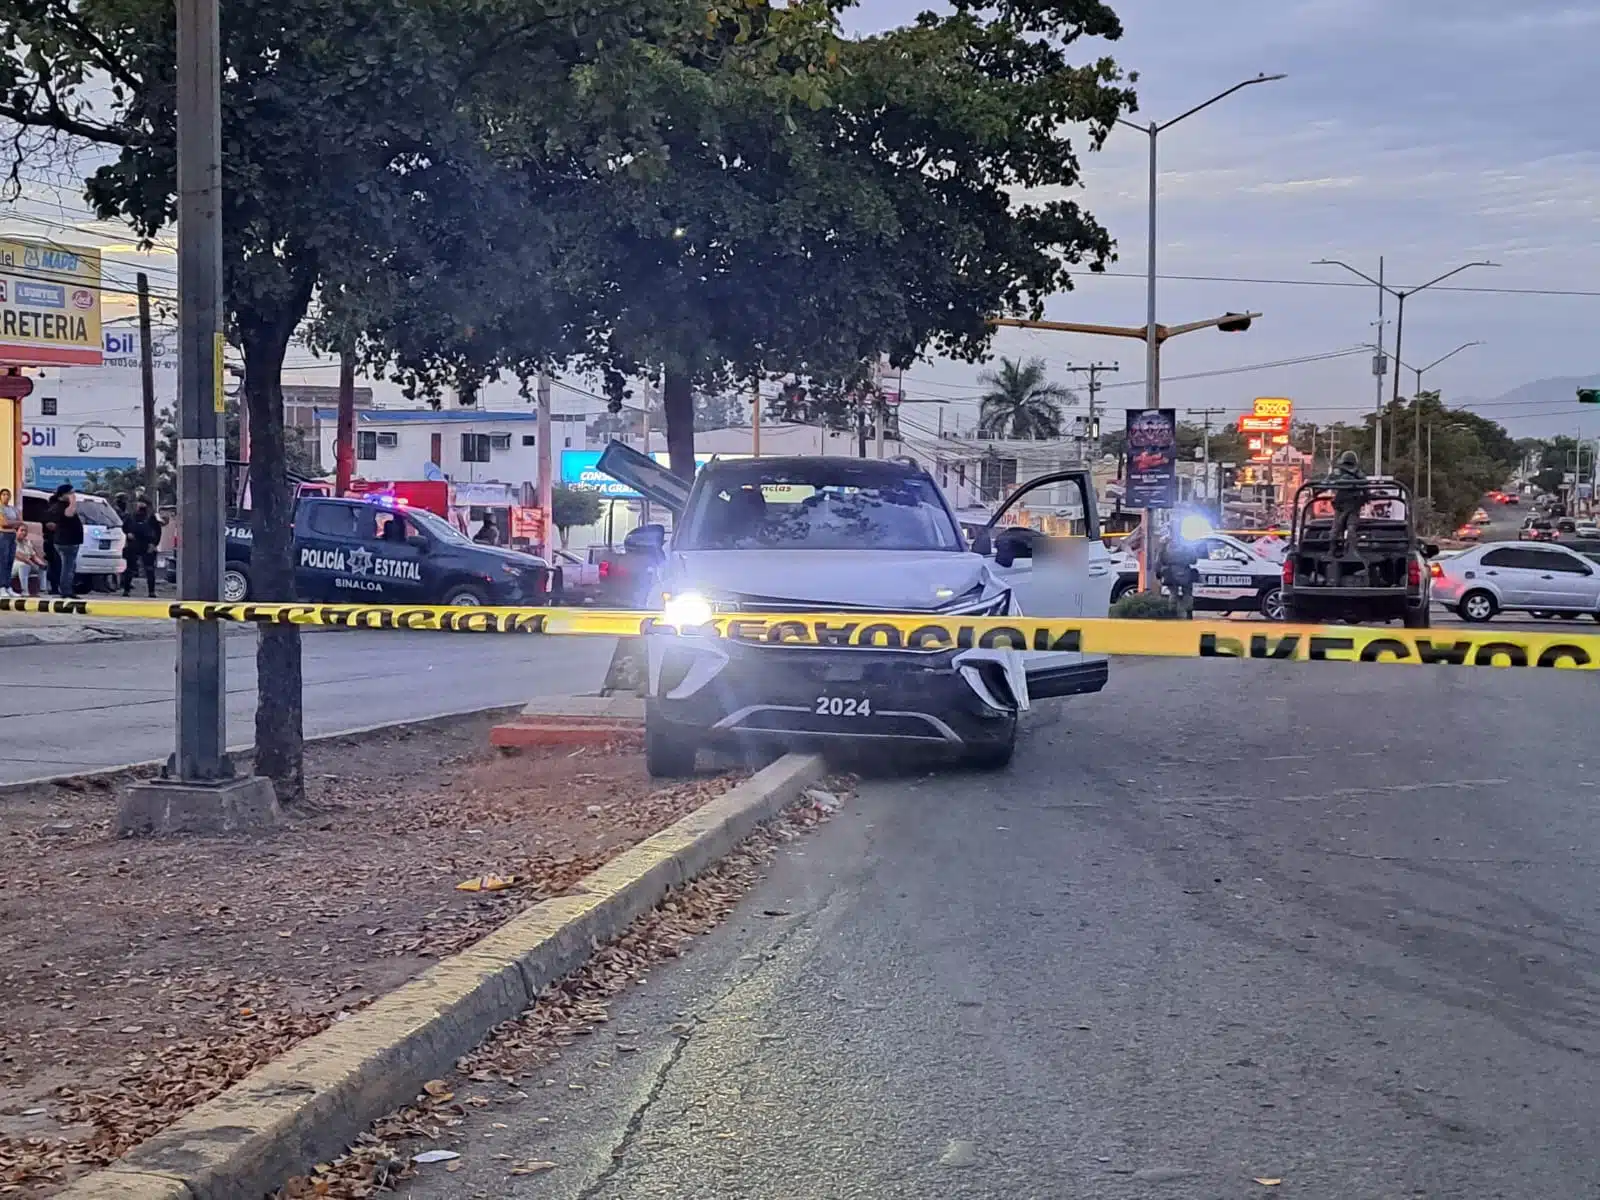 Camioneta en la que hirieron de bala a un hombre en Culiacán